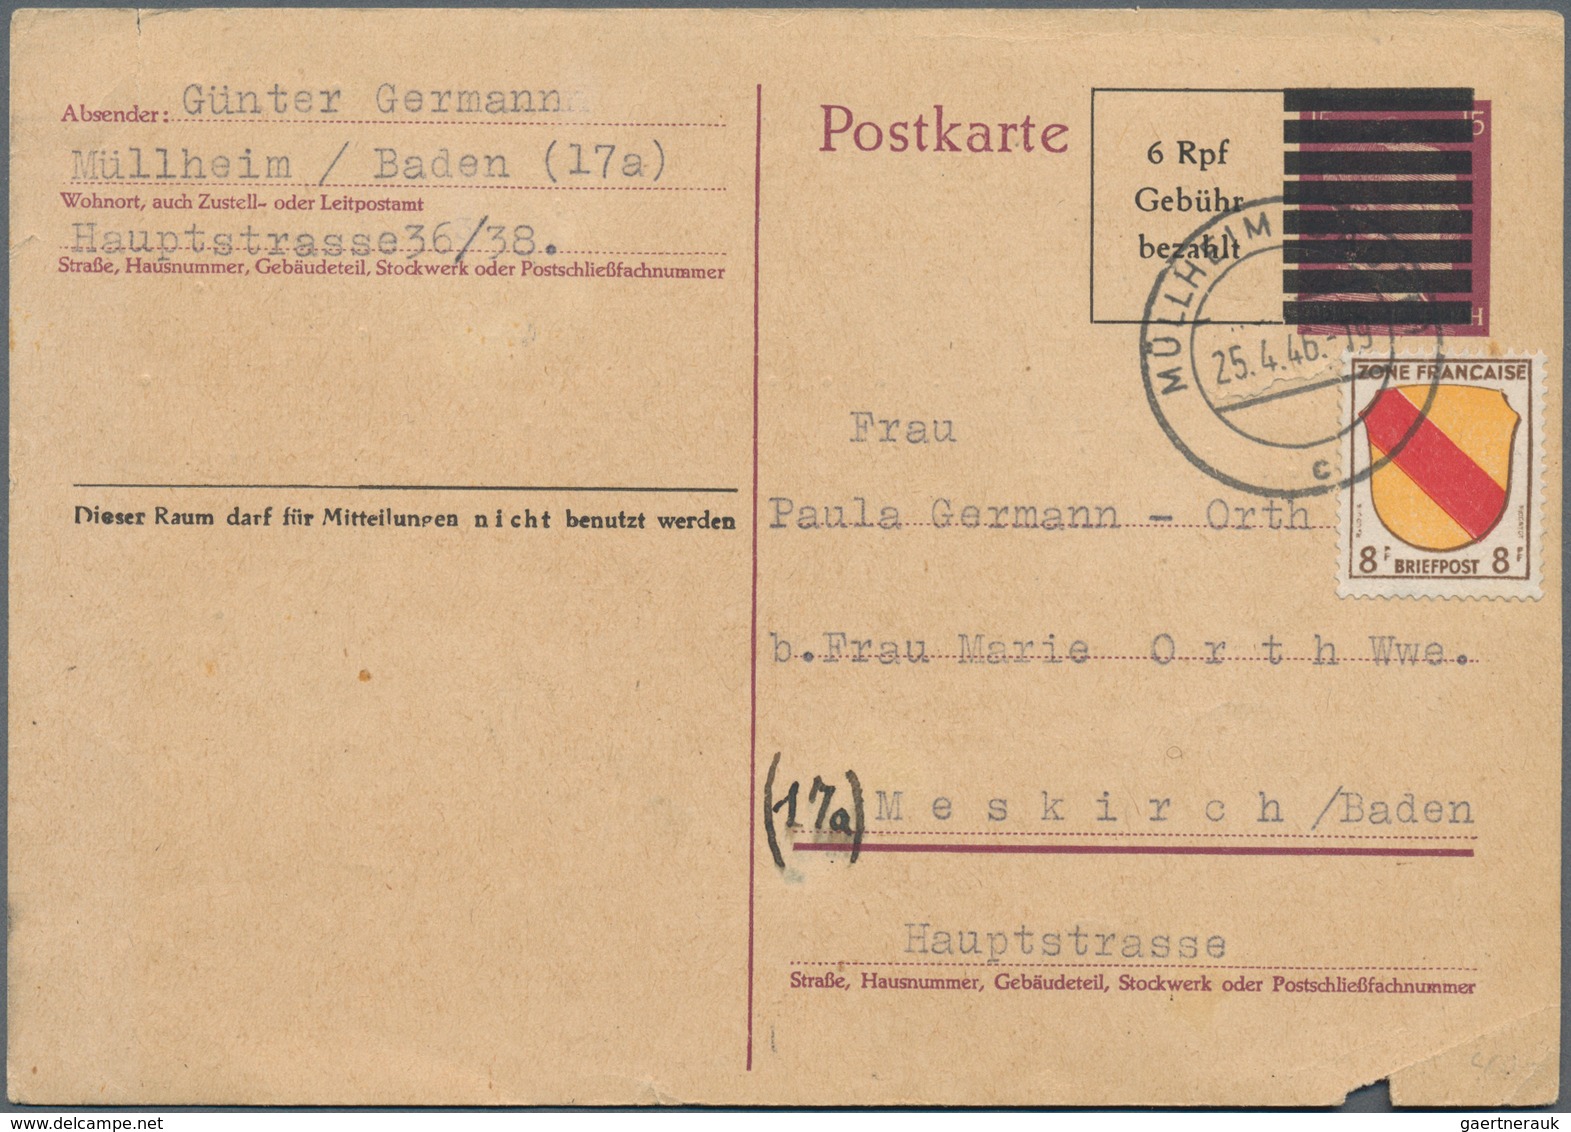 Französische Zone: 1946/1949, Partie von ca. 540 Briefen und Karten, meist Bedarfspost der verschied